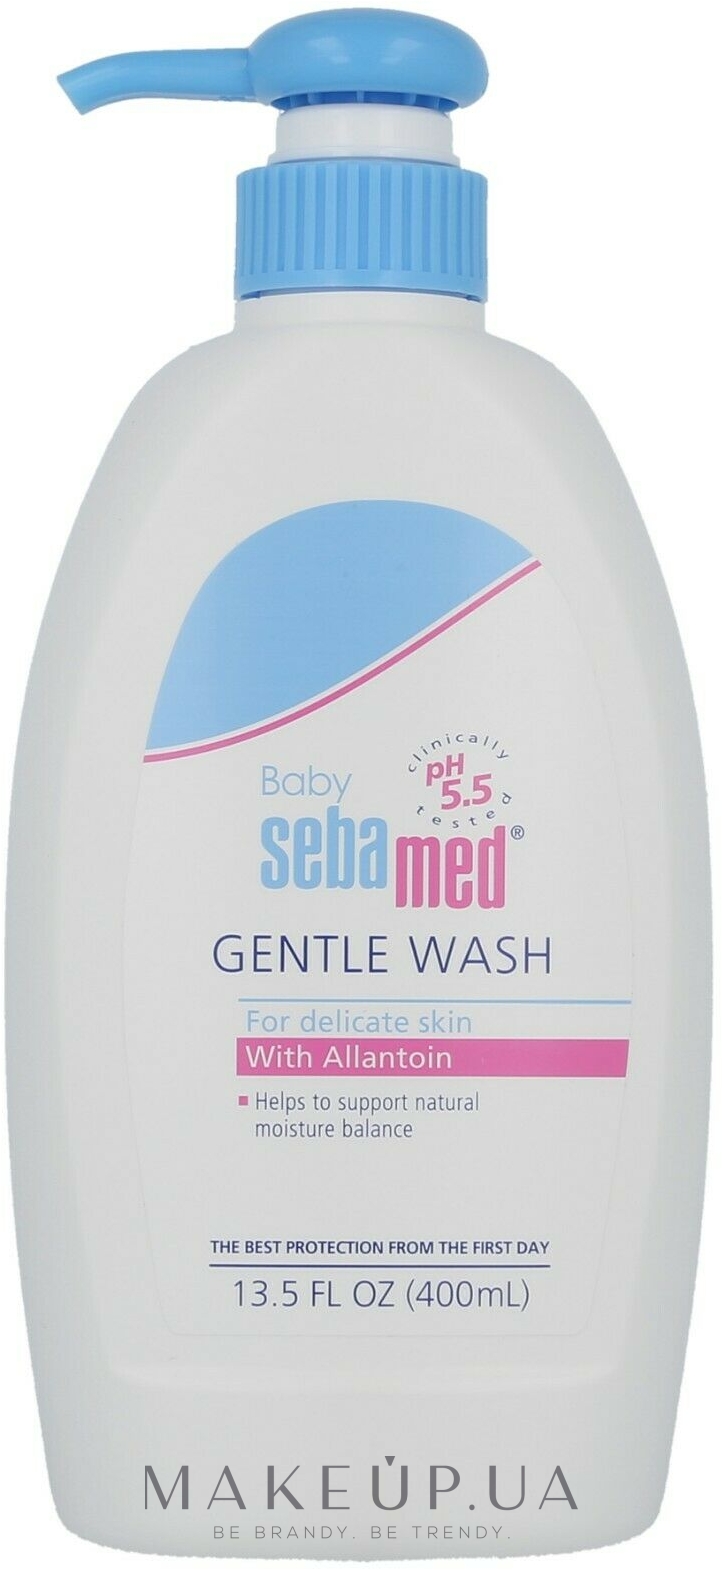 Деликатная эмульсия для умывания для тела и волос - Sebamed Extra Soft Ph 5.5 Baby Wash — фото 400ml